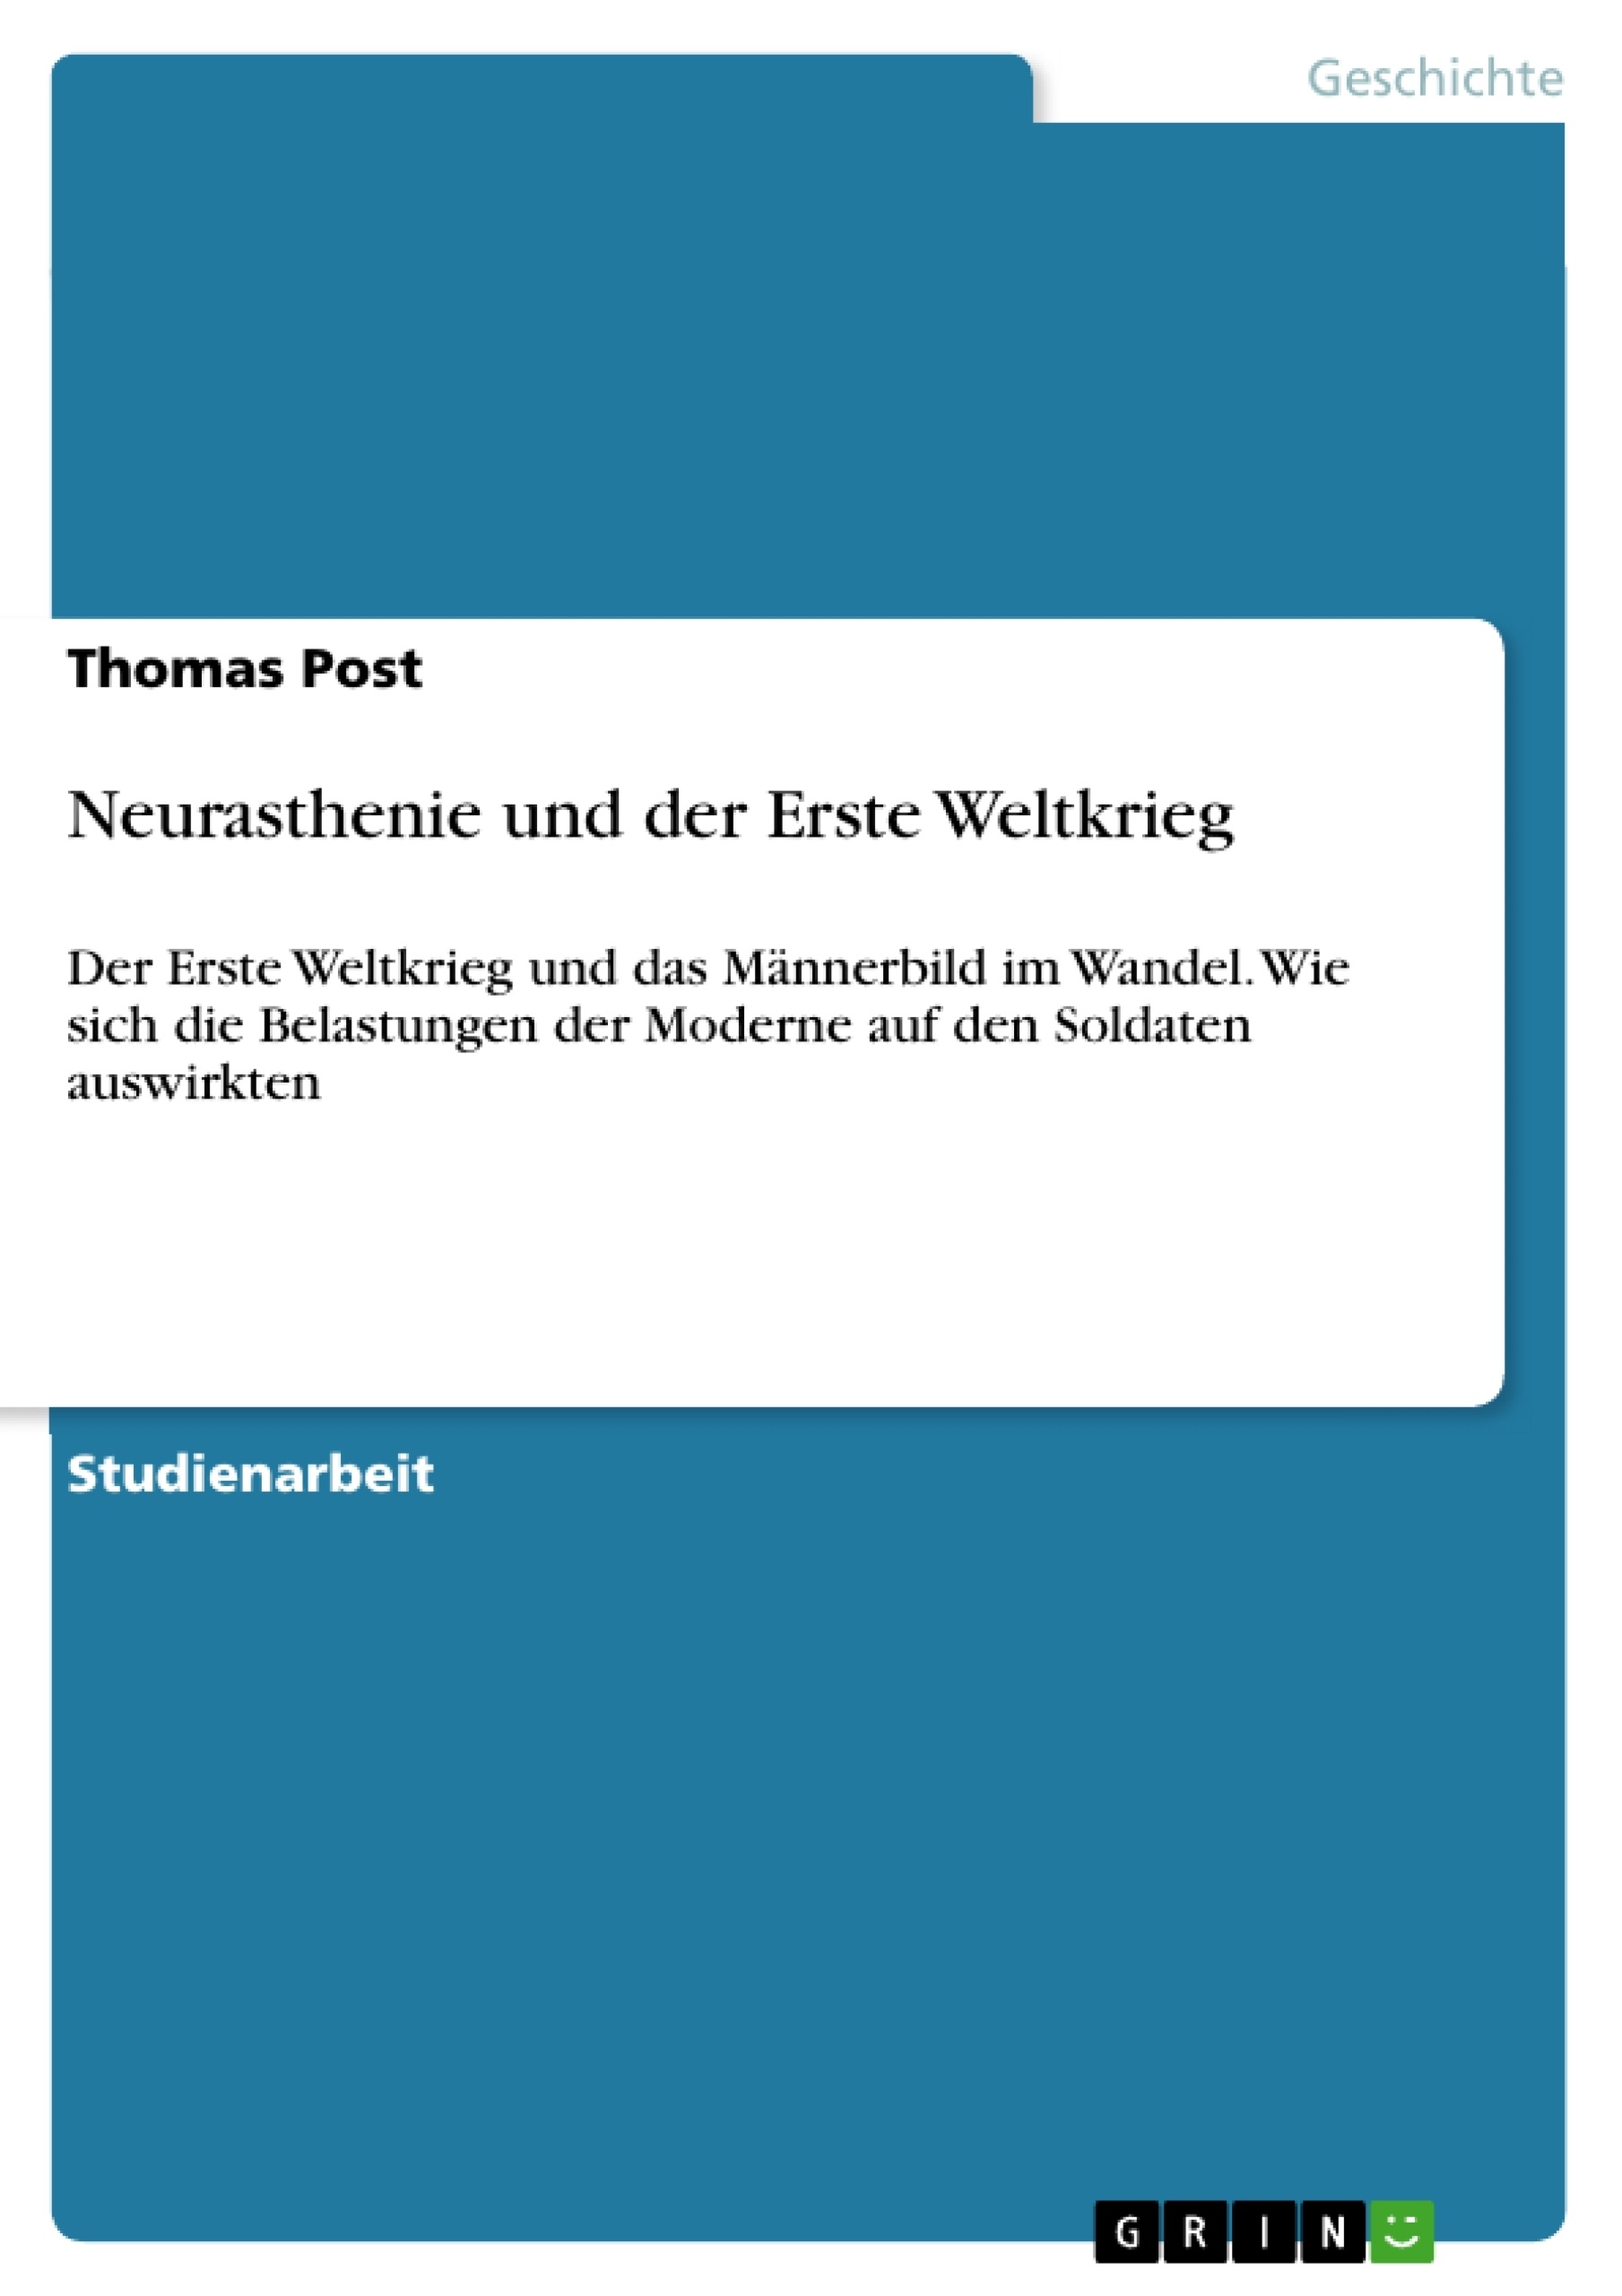 Título: Neurasthenie und der Erste Weltkrieg